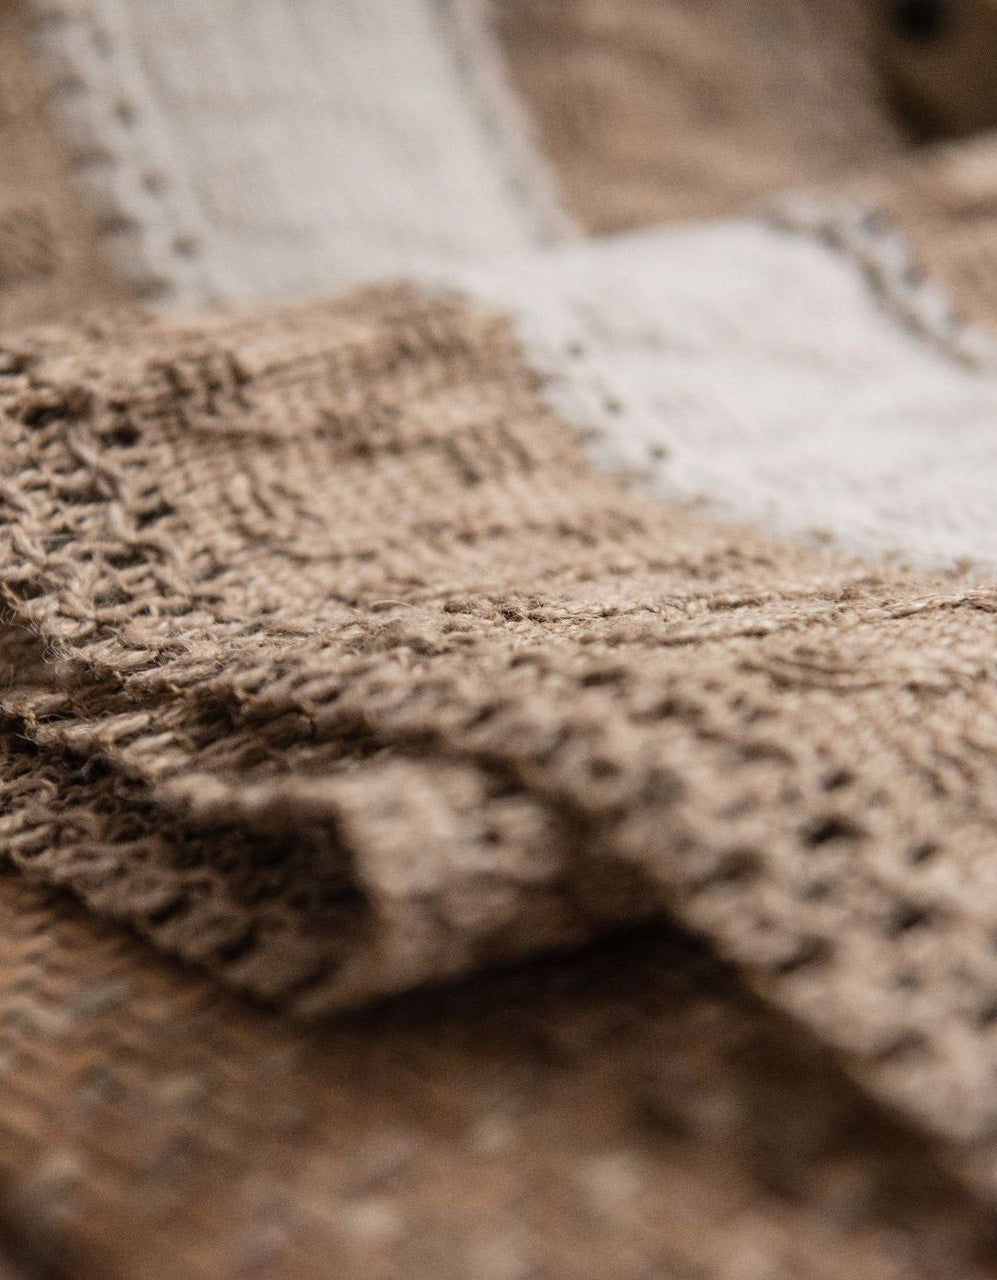 Cotton Linen Weaving Tassel Table Runner